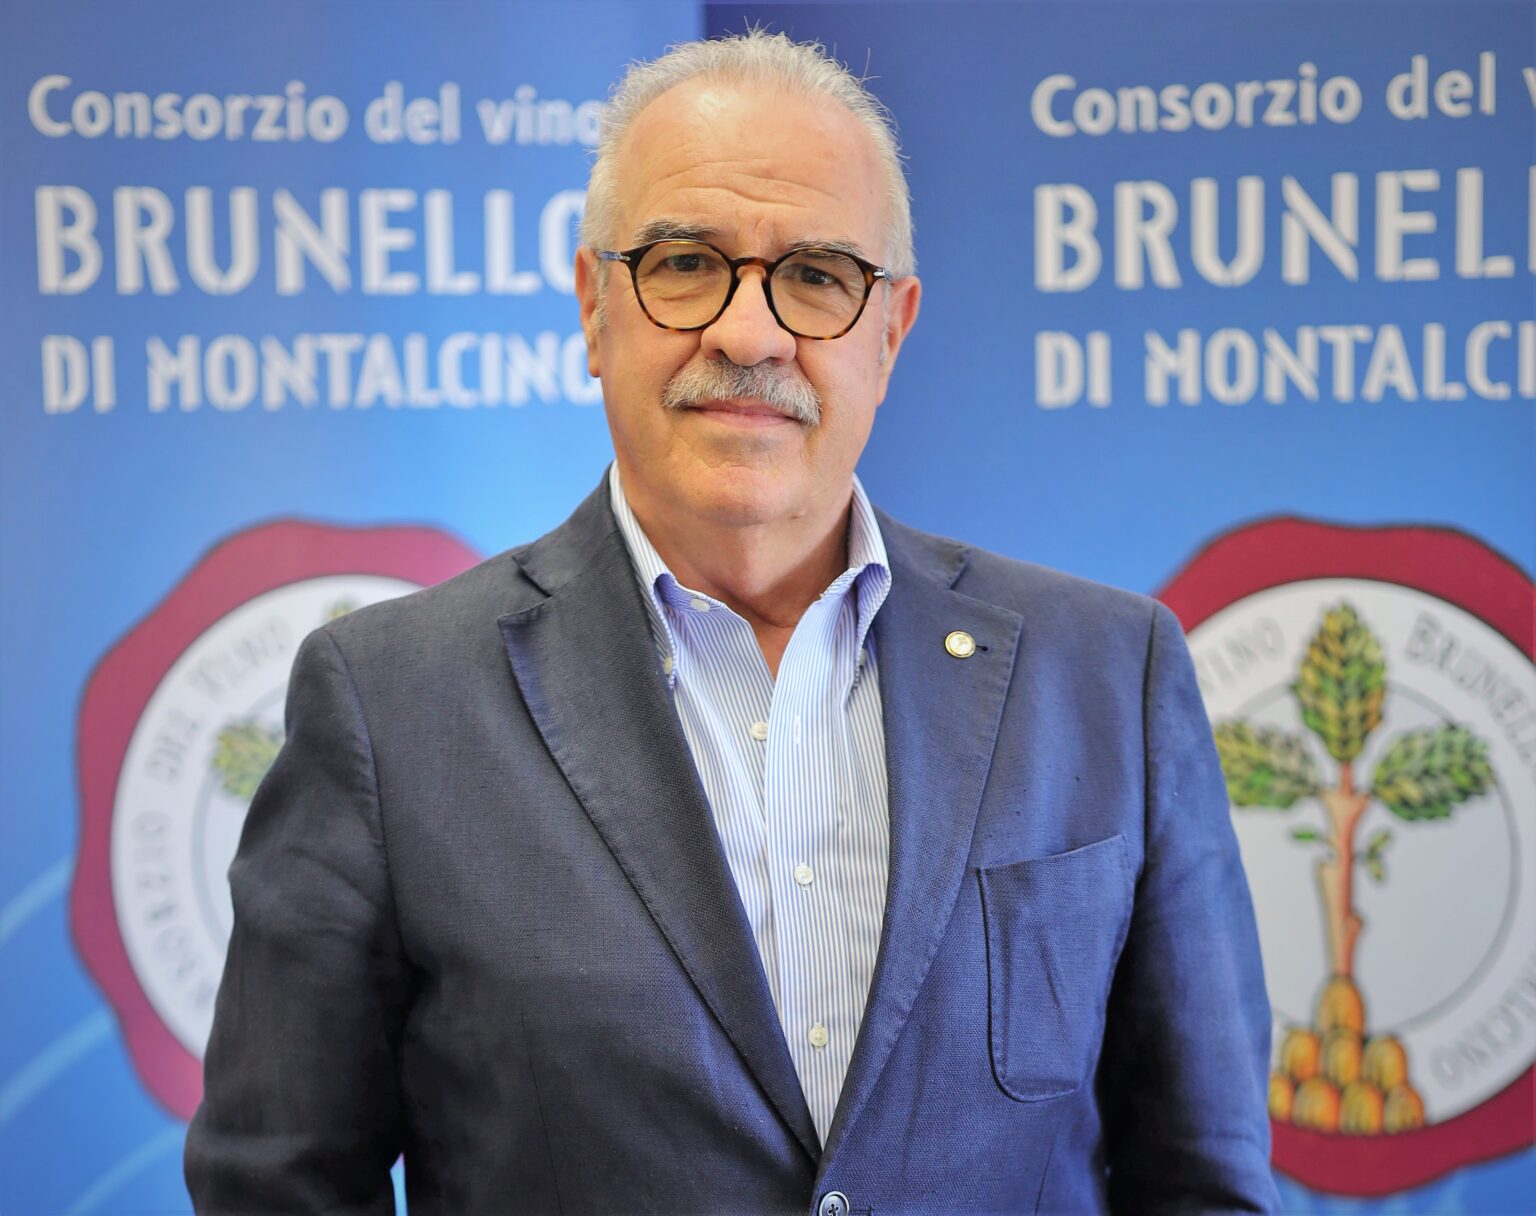 Fabrizio-Bindocci_presidente-Consorzio-del-vino-Brunello-di-Montalcino-1536x1216.